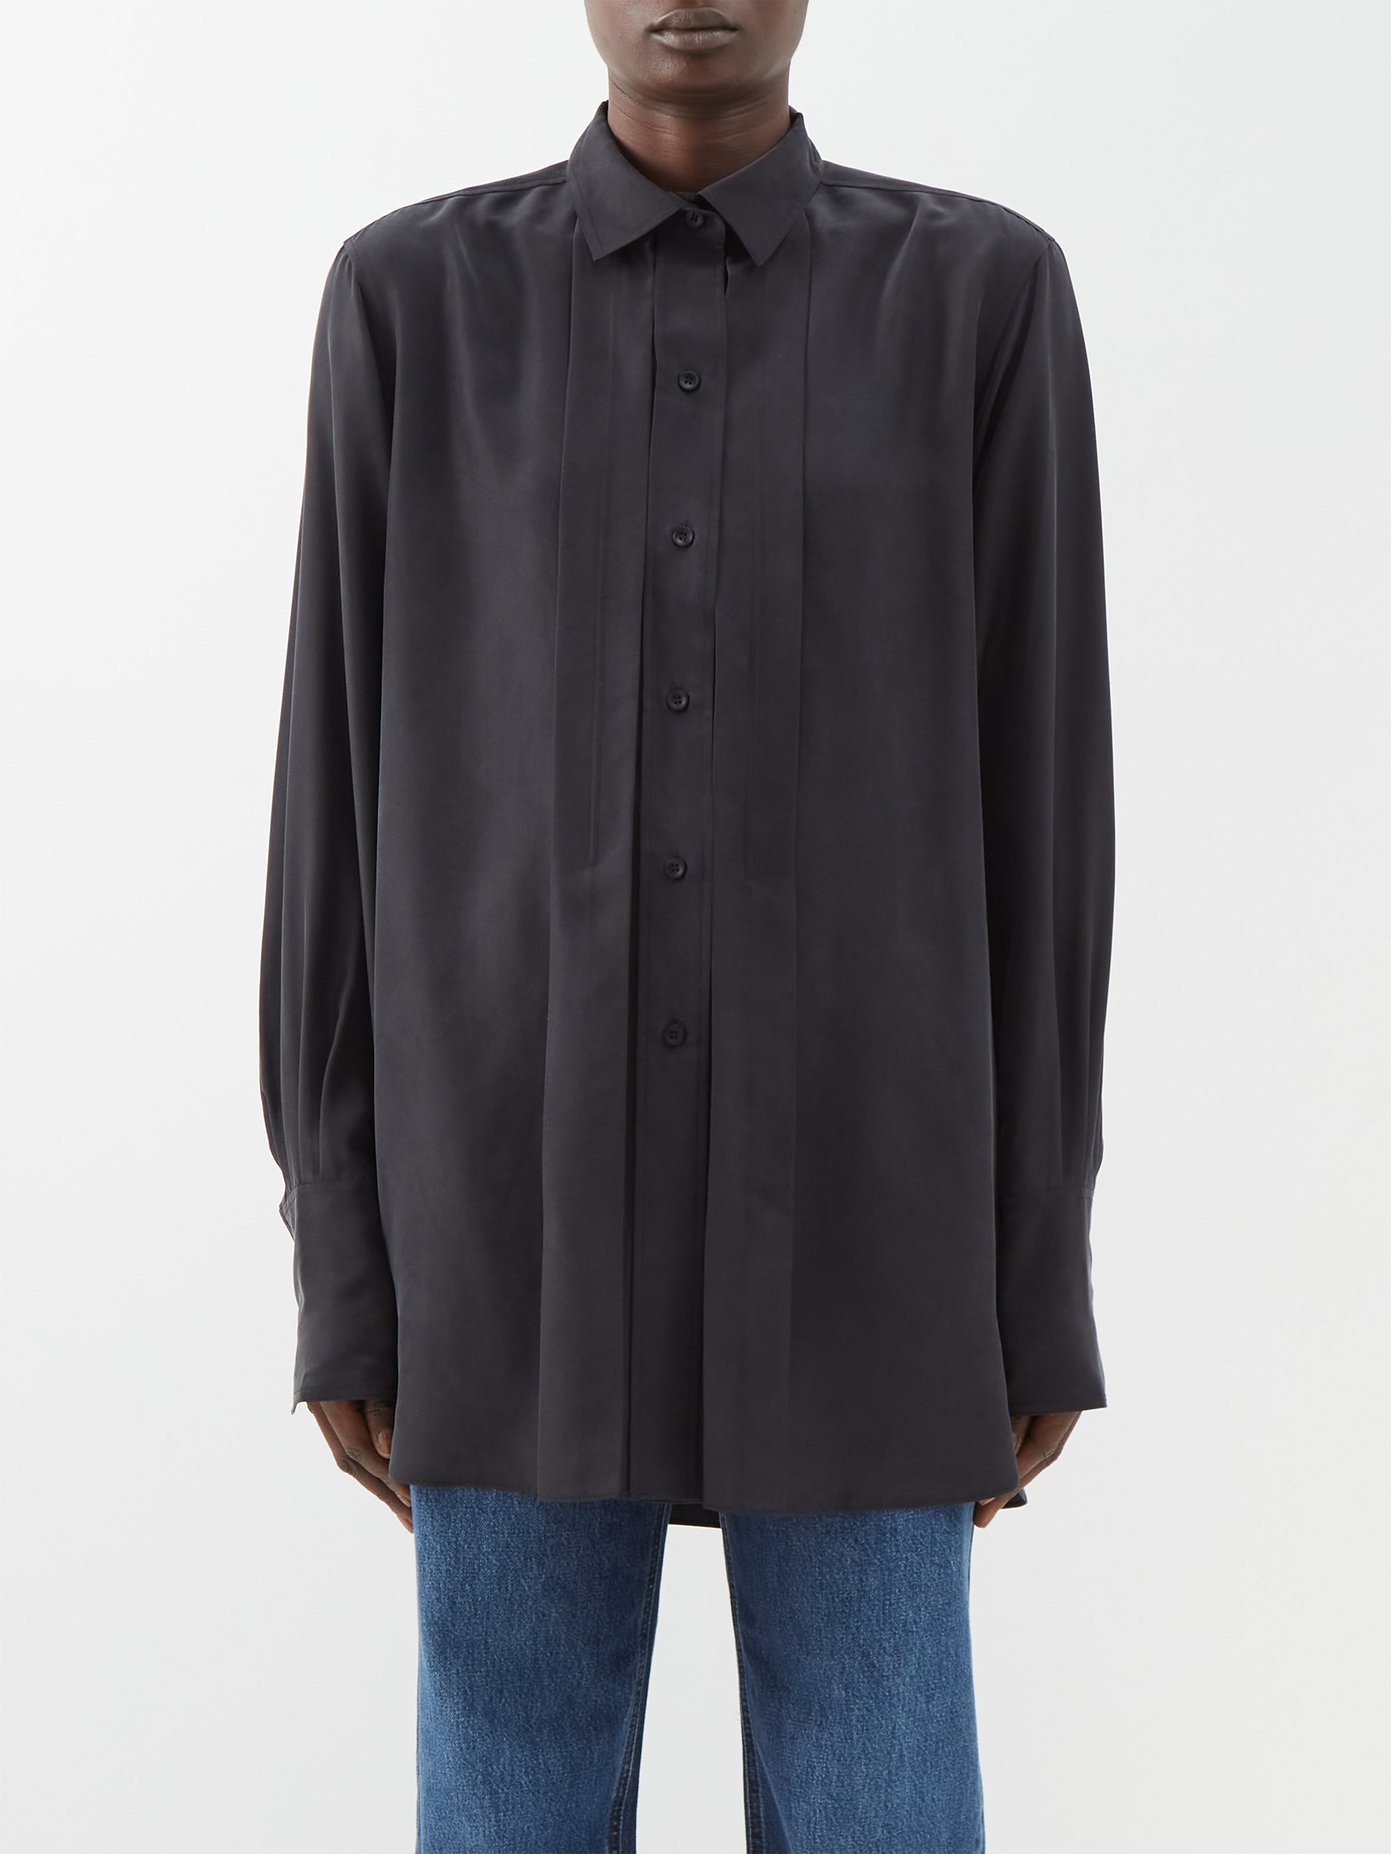 토템 Toteme Pleated-panel satin shirt,basicInfo:{code:1531512